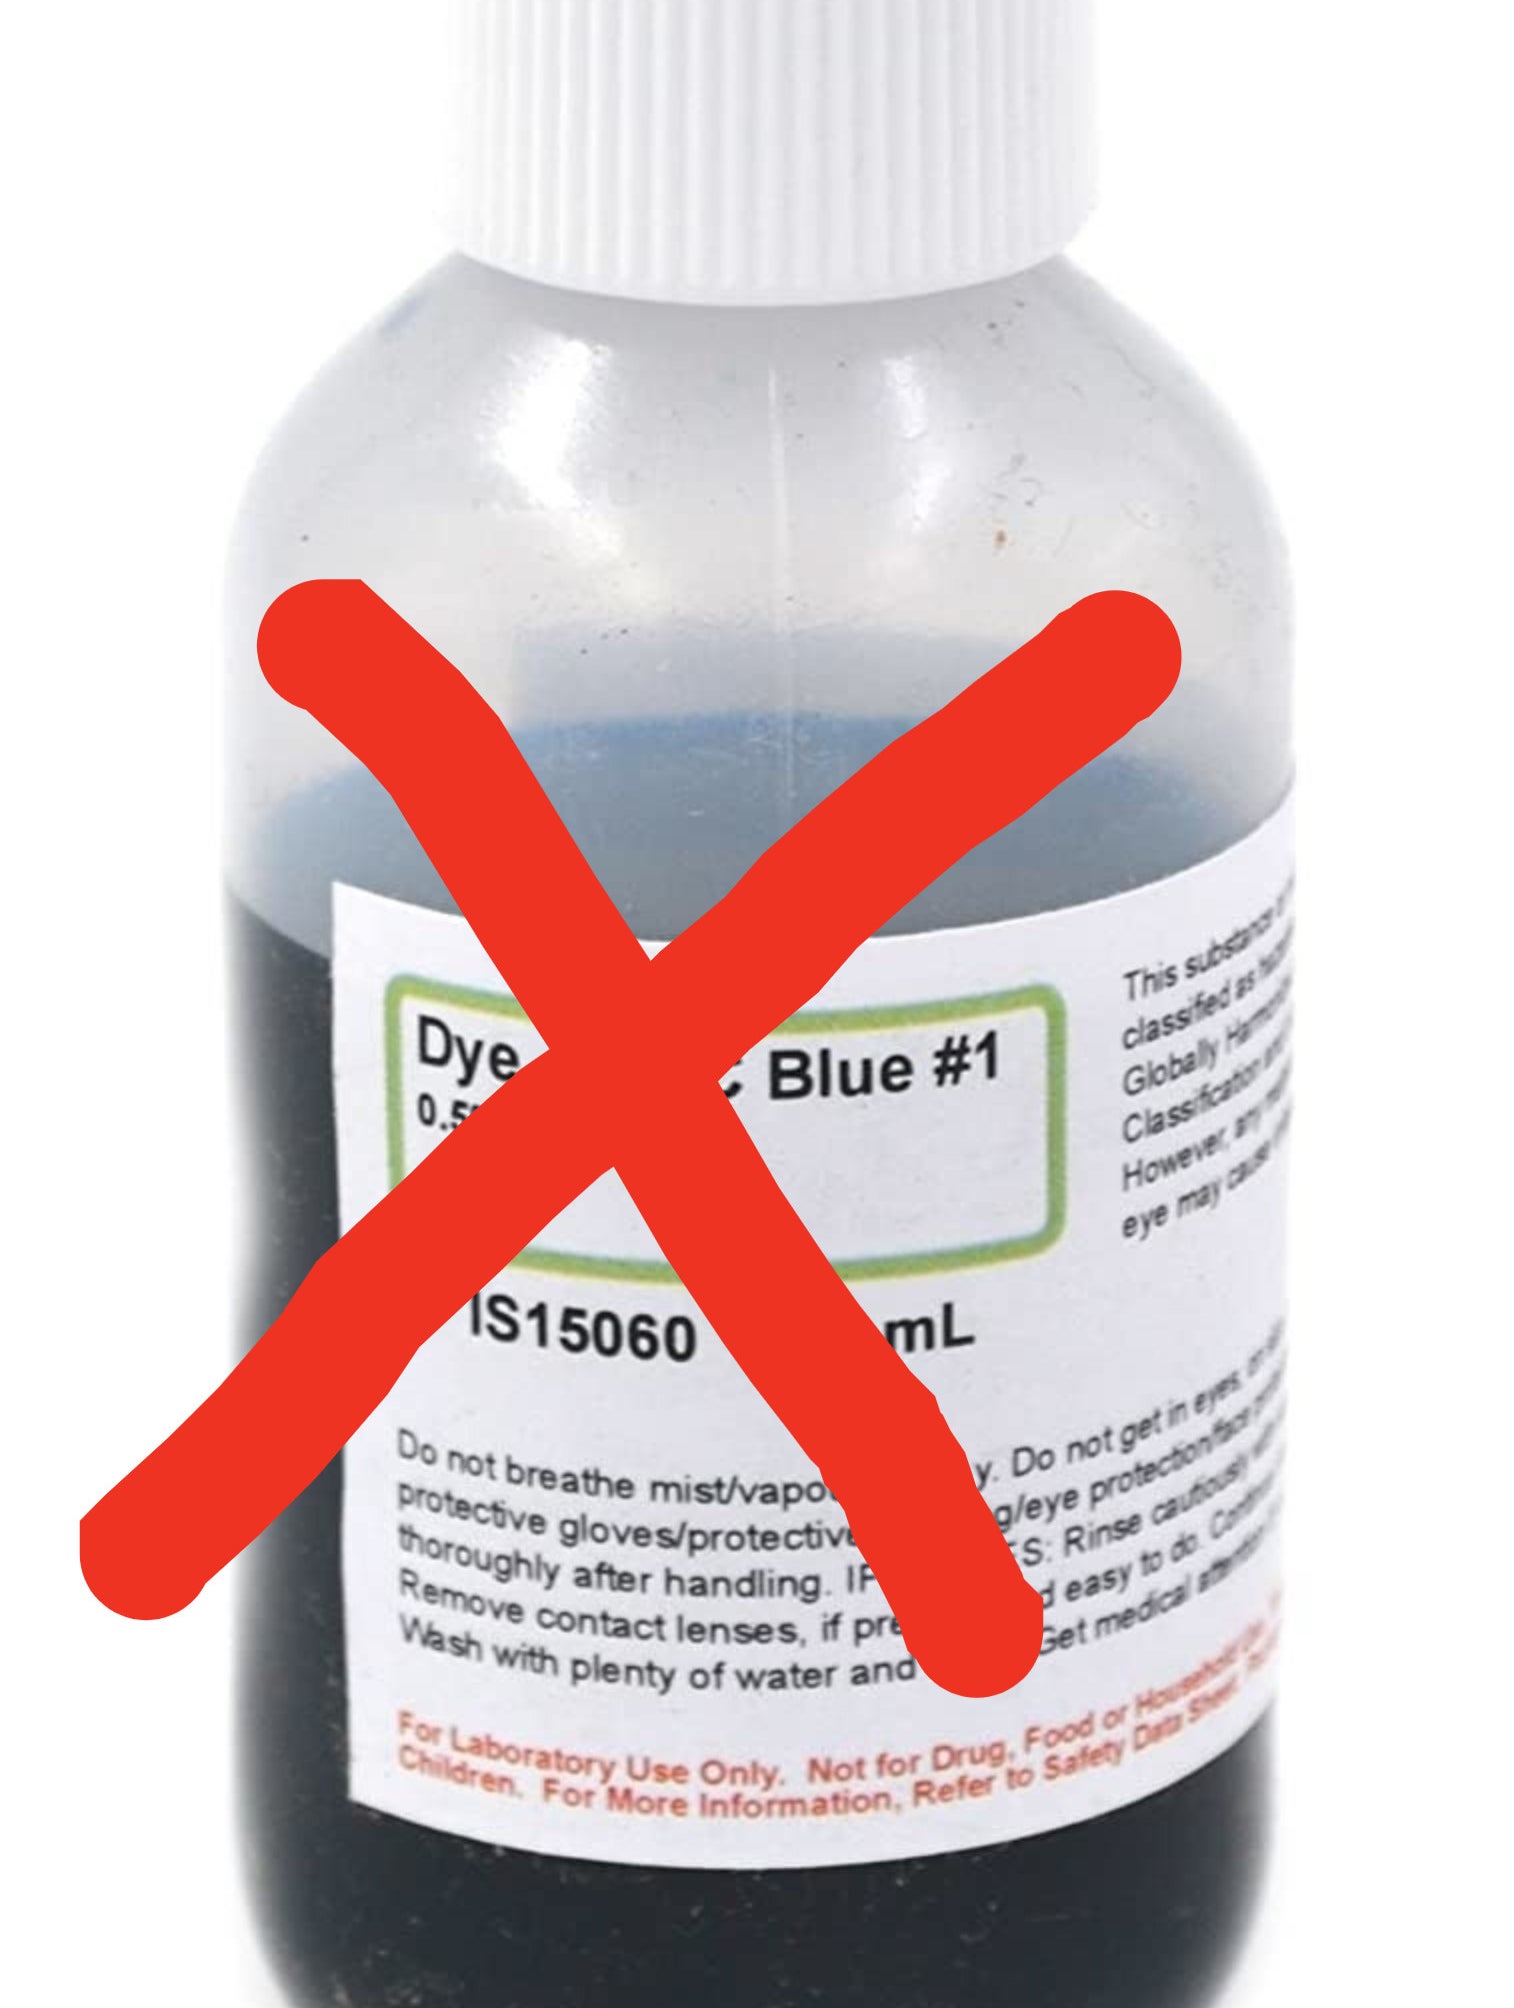 Bottle of Blue #1 dye